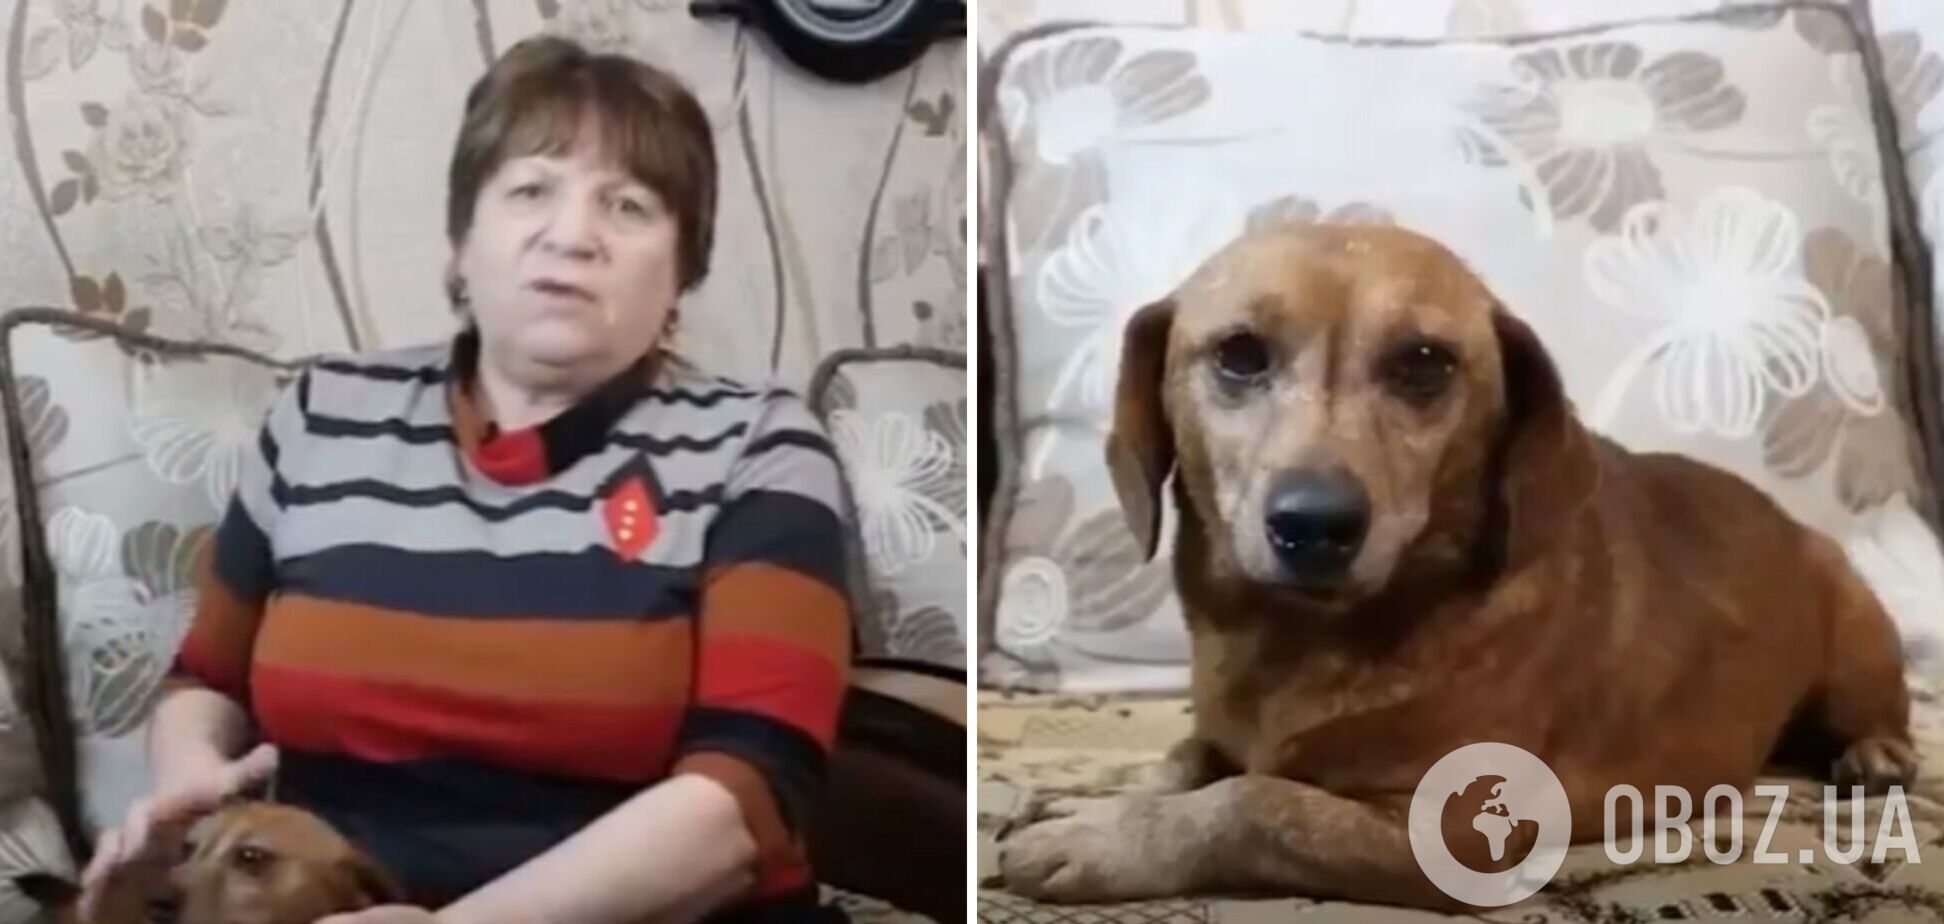 Российский 'мобик' отправил матери в Башкортостан собаку, украденную в Запорожье: та назвала пса Zетом. Видео